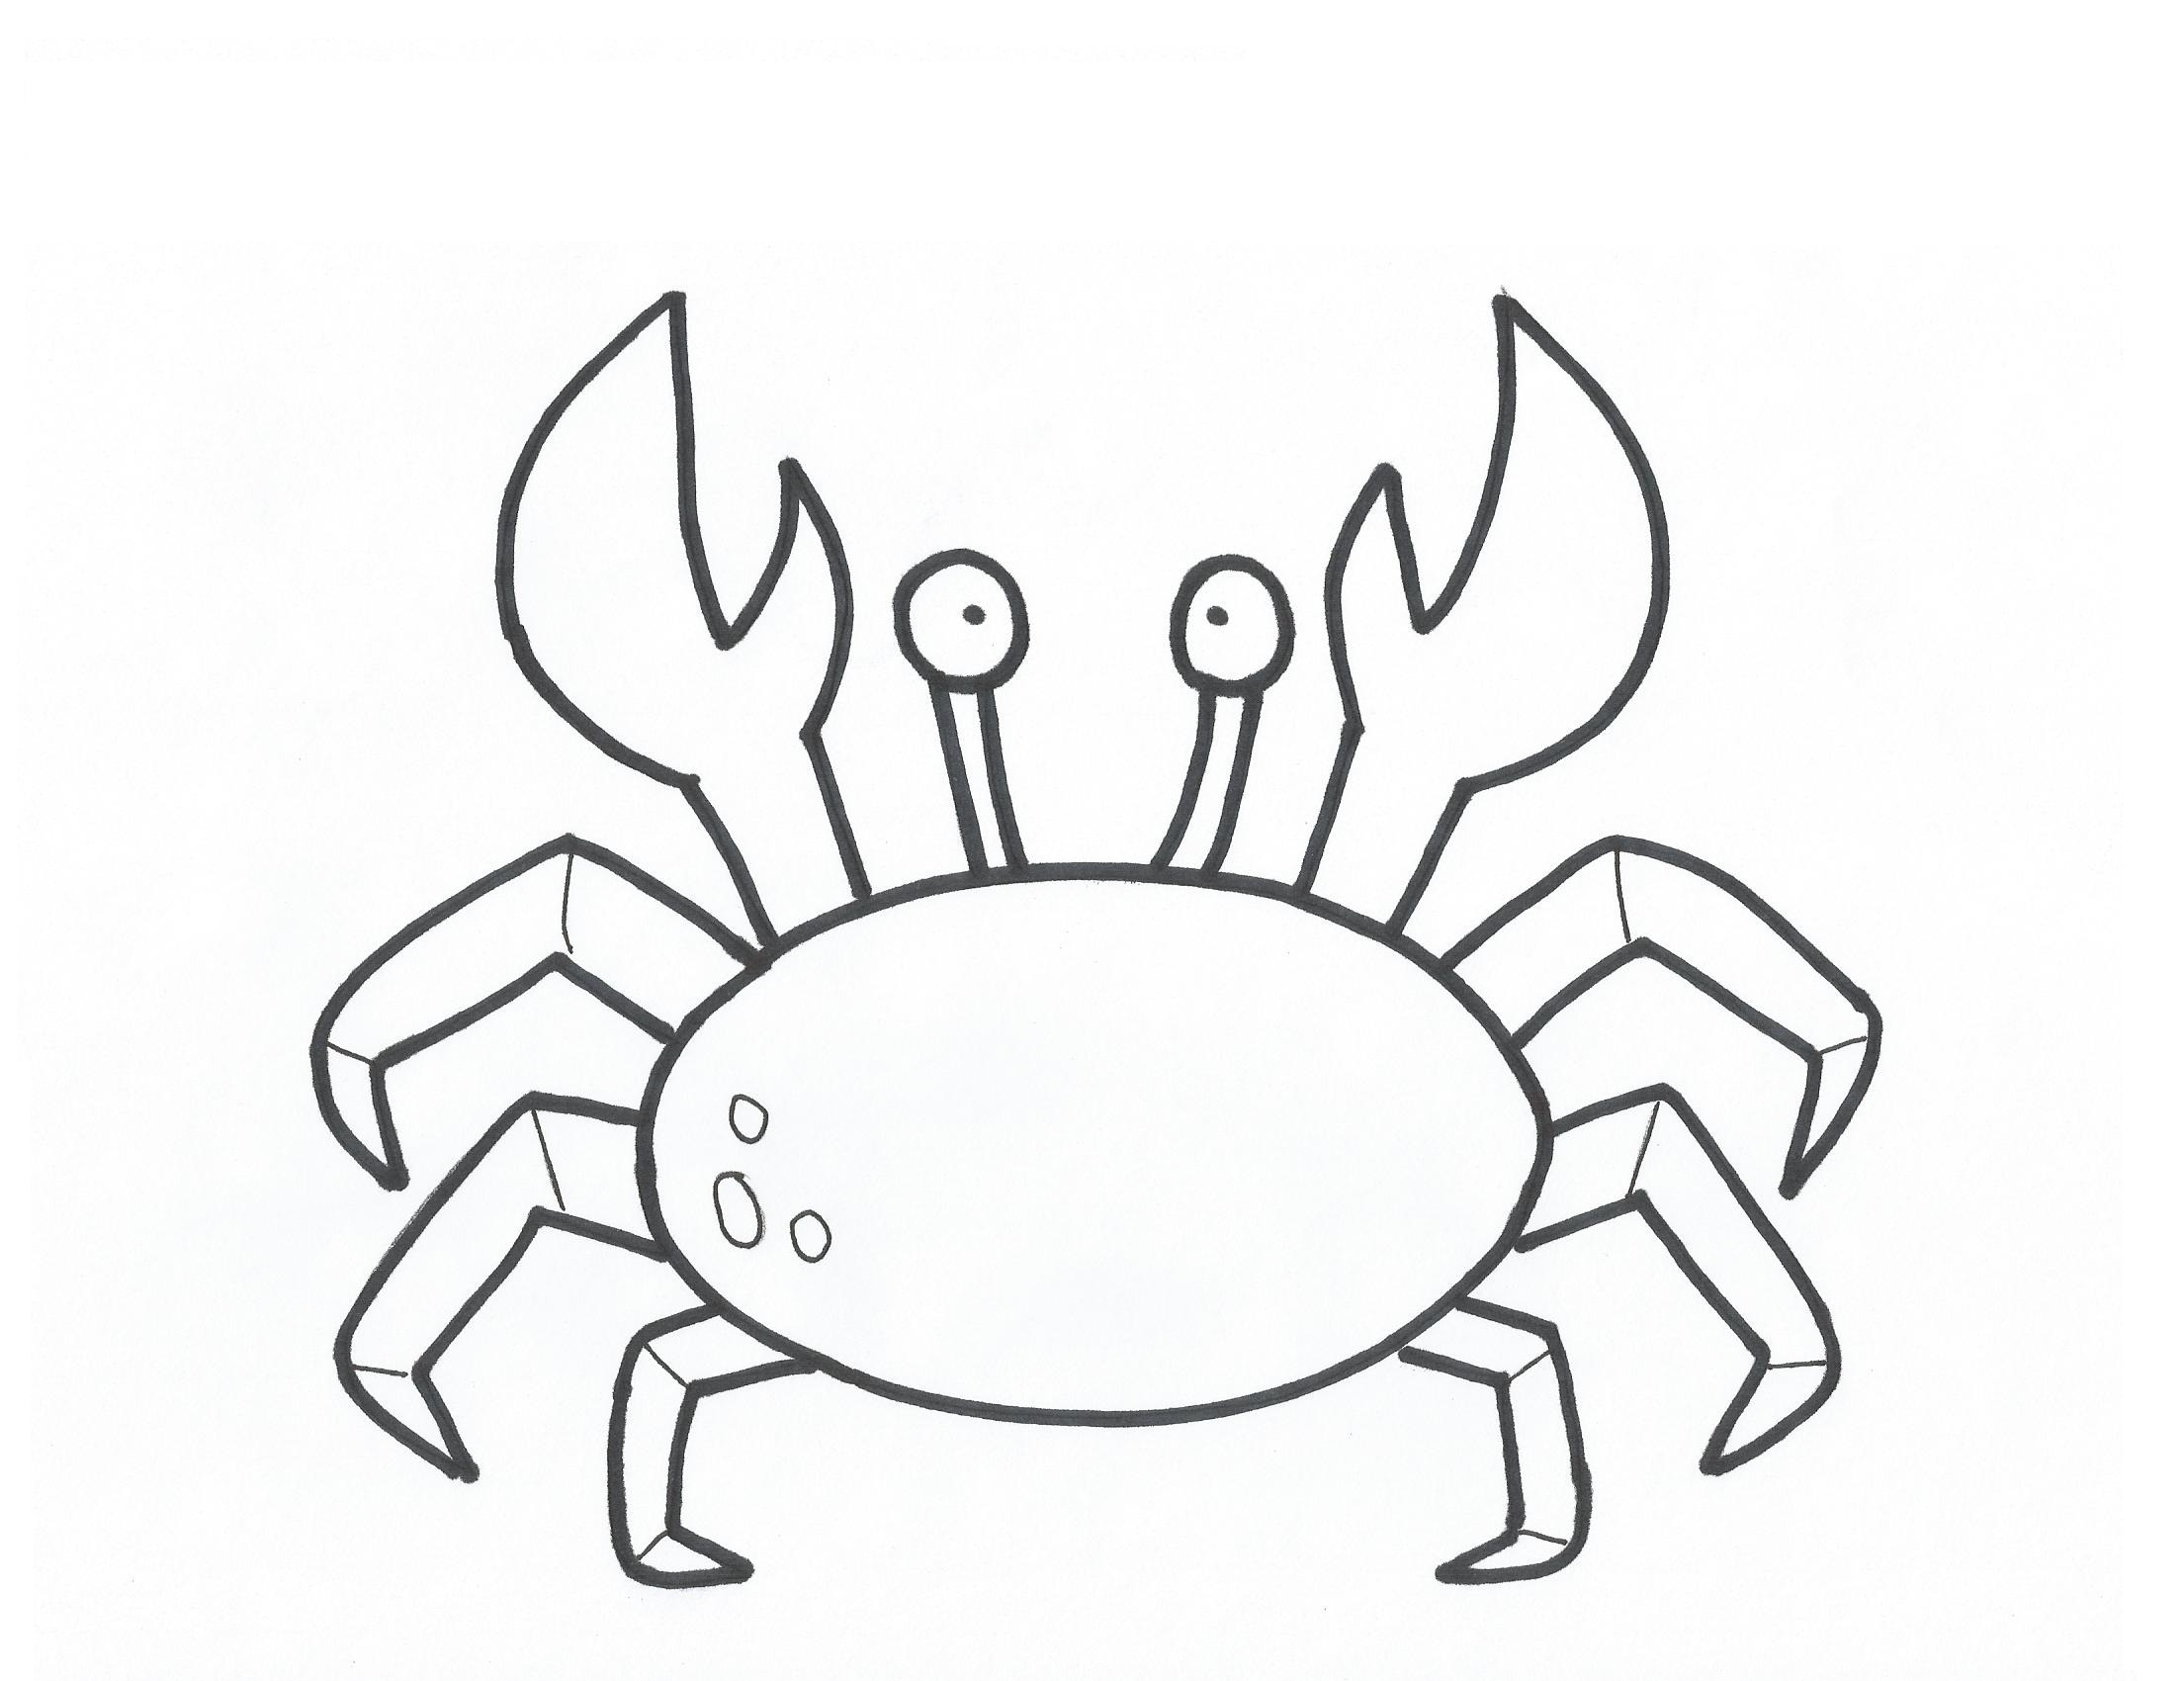 Crab drawing free.